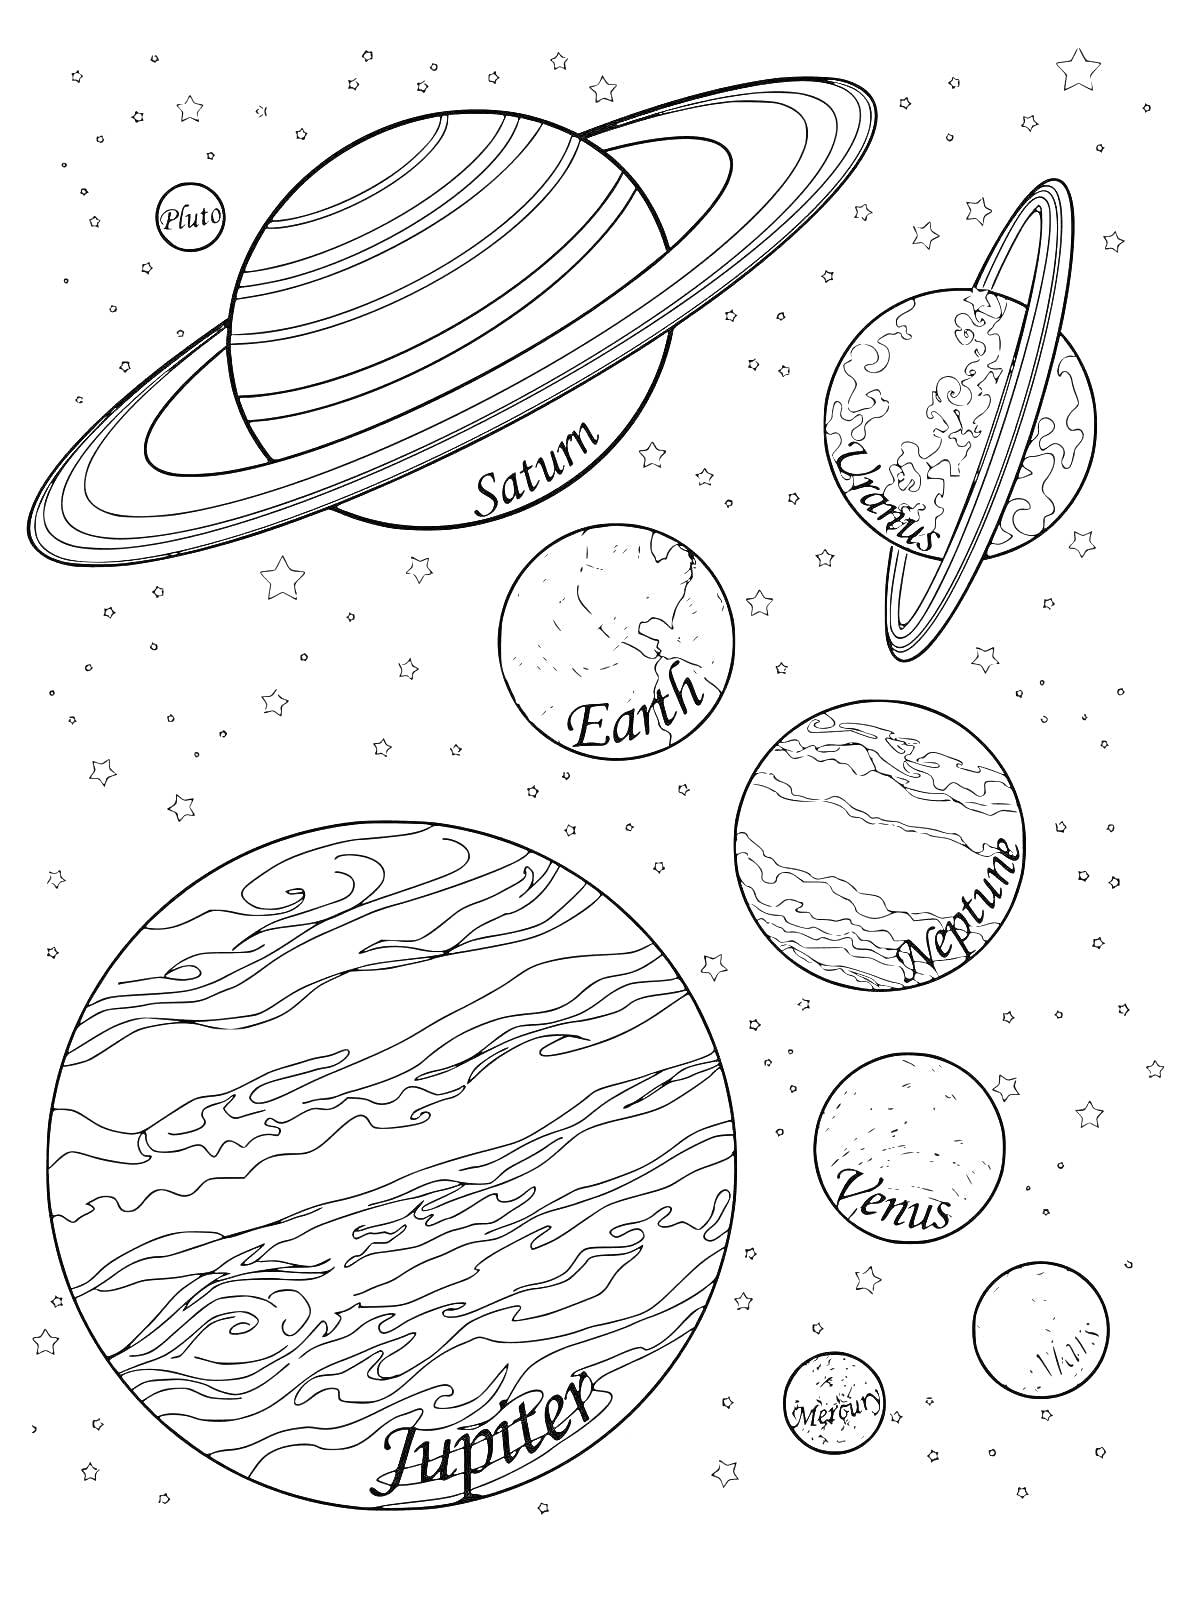 Раскраска Раскраска с планетами Солнечной системы: Плутон, Сатурн, Уран, Земля, Нептун, Венера, Меркурий, Марс, Юпитер и звёздами